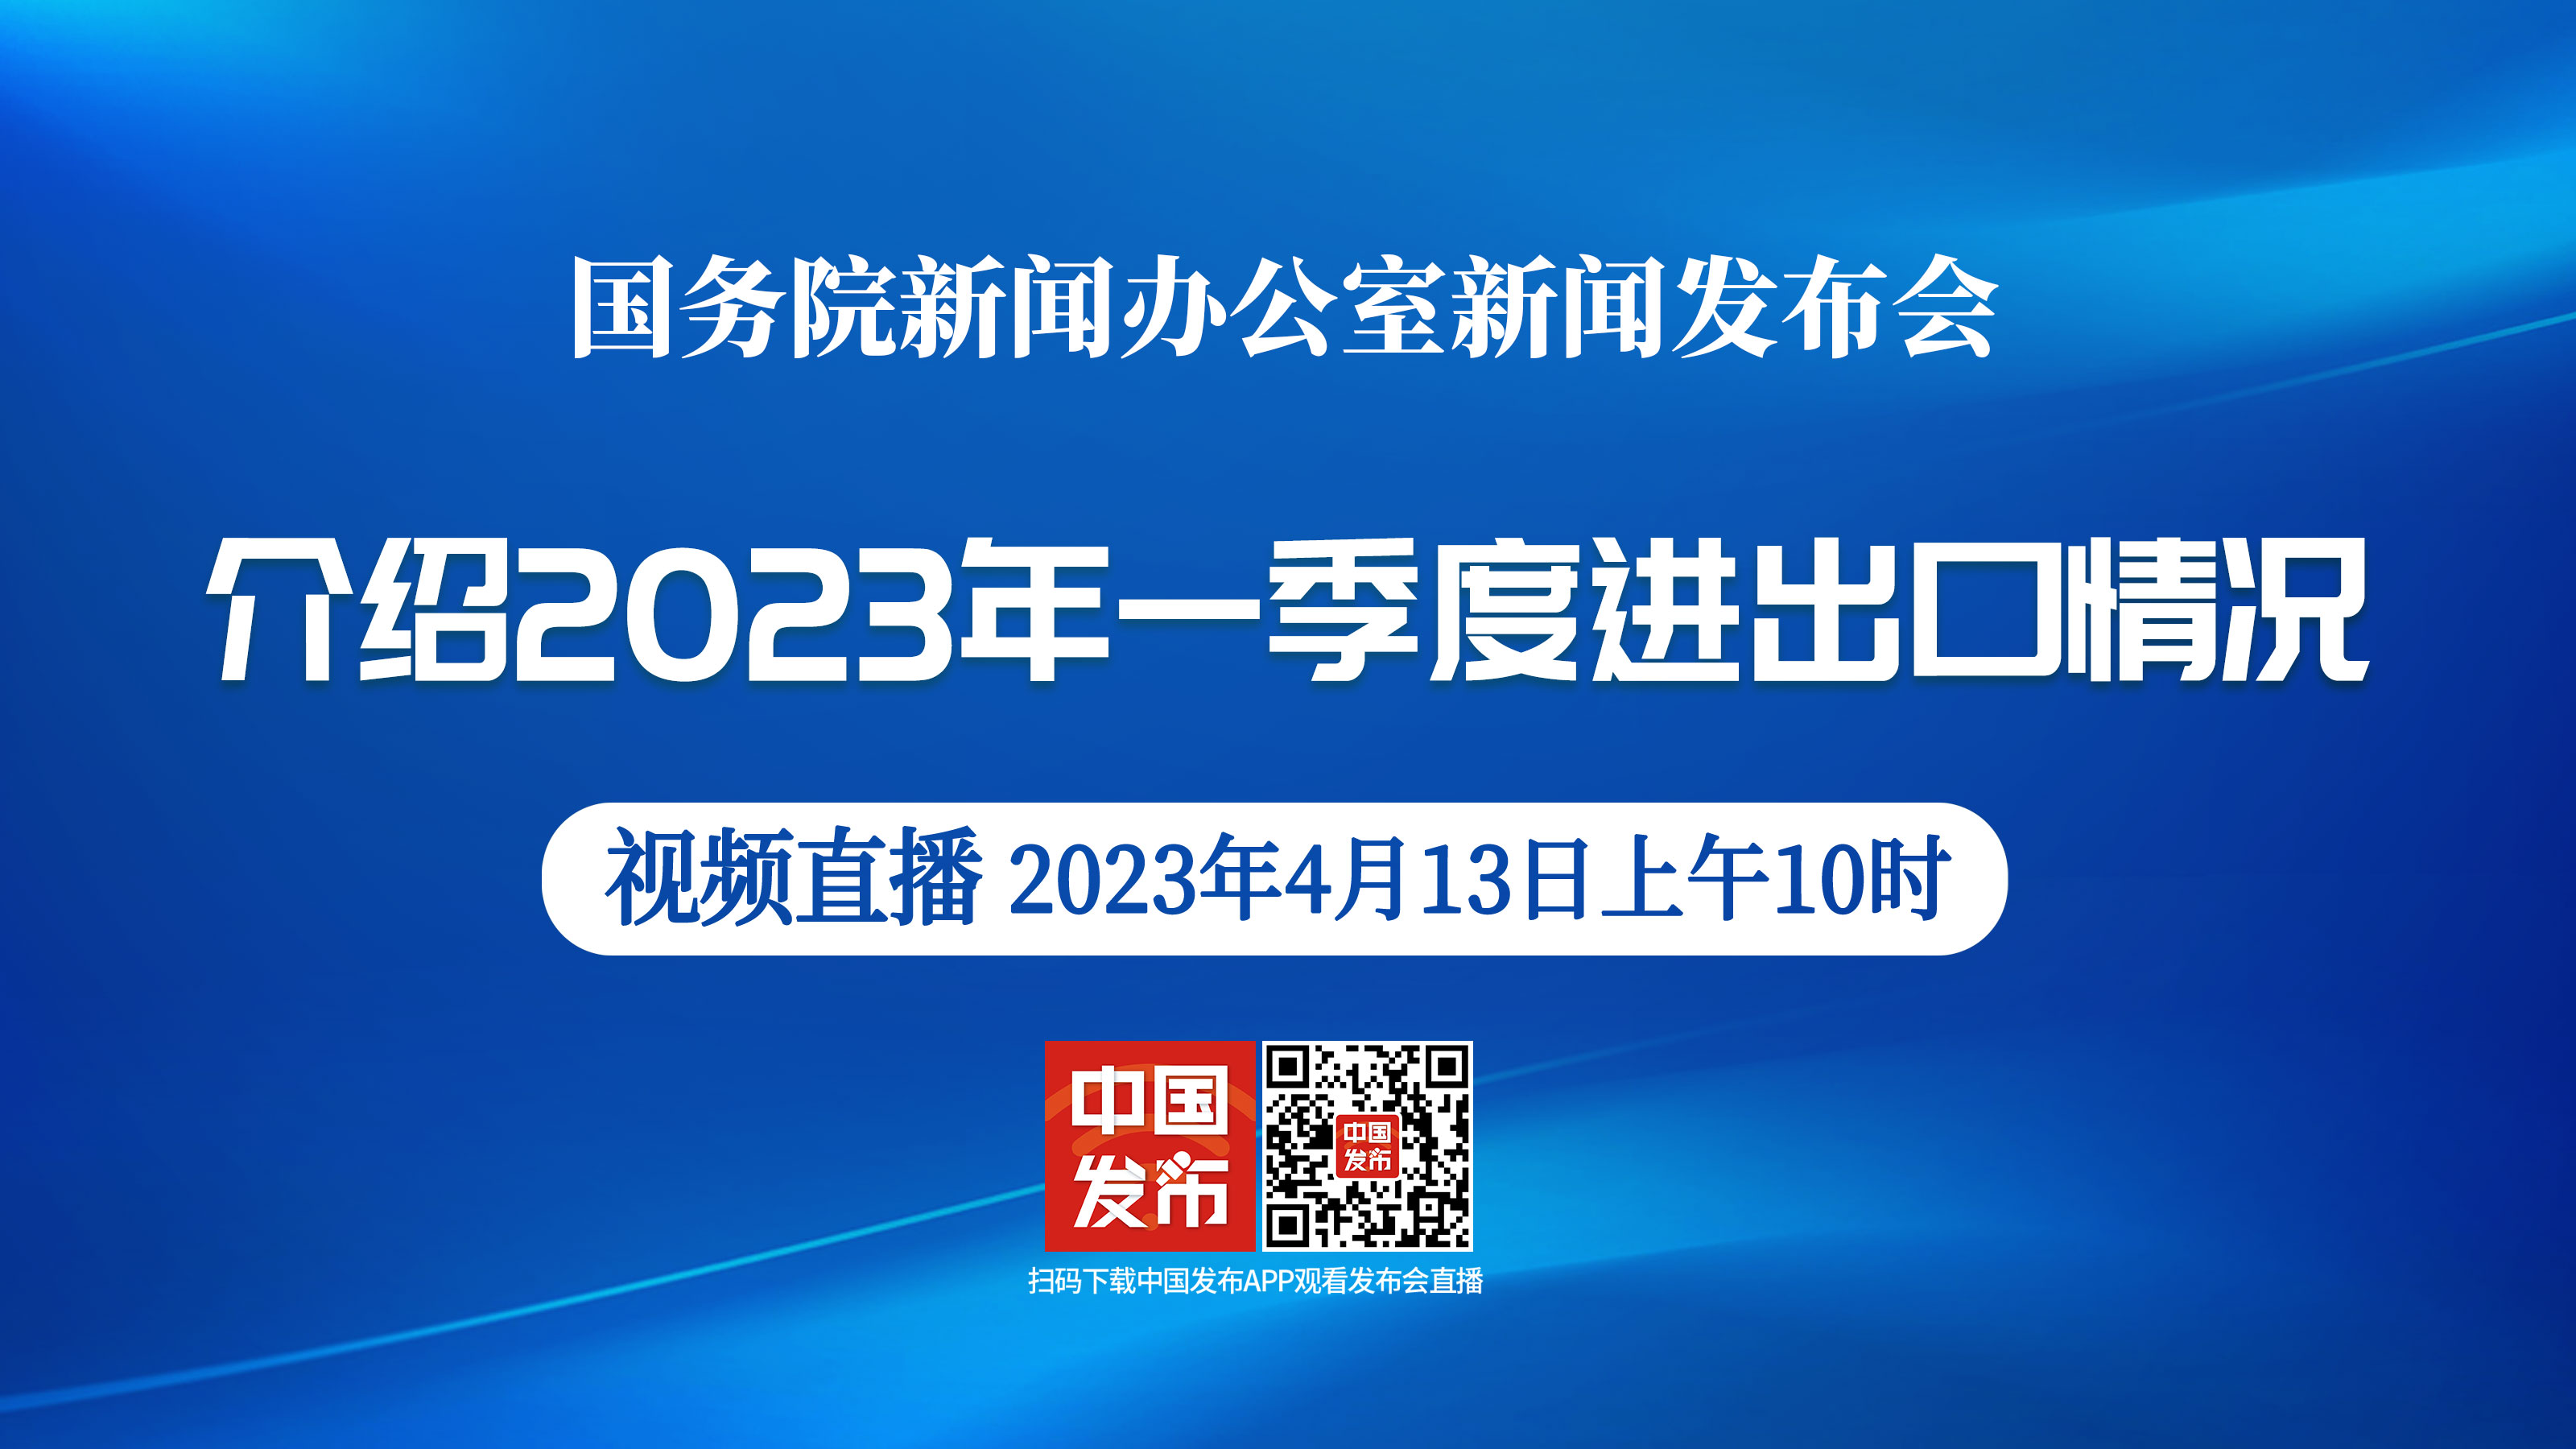 國新辦舉行介紹2023年一季度進出口情況新聞發布會